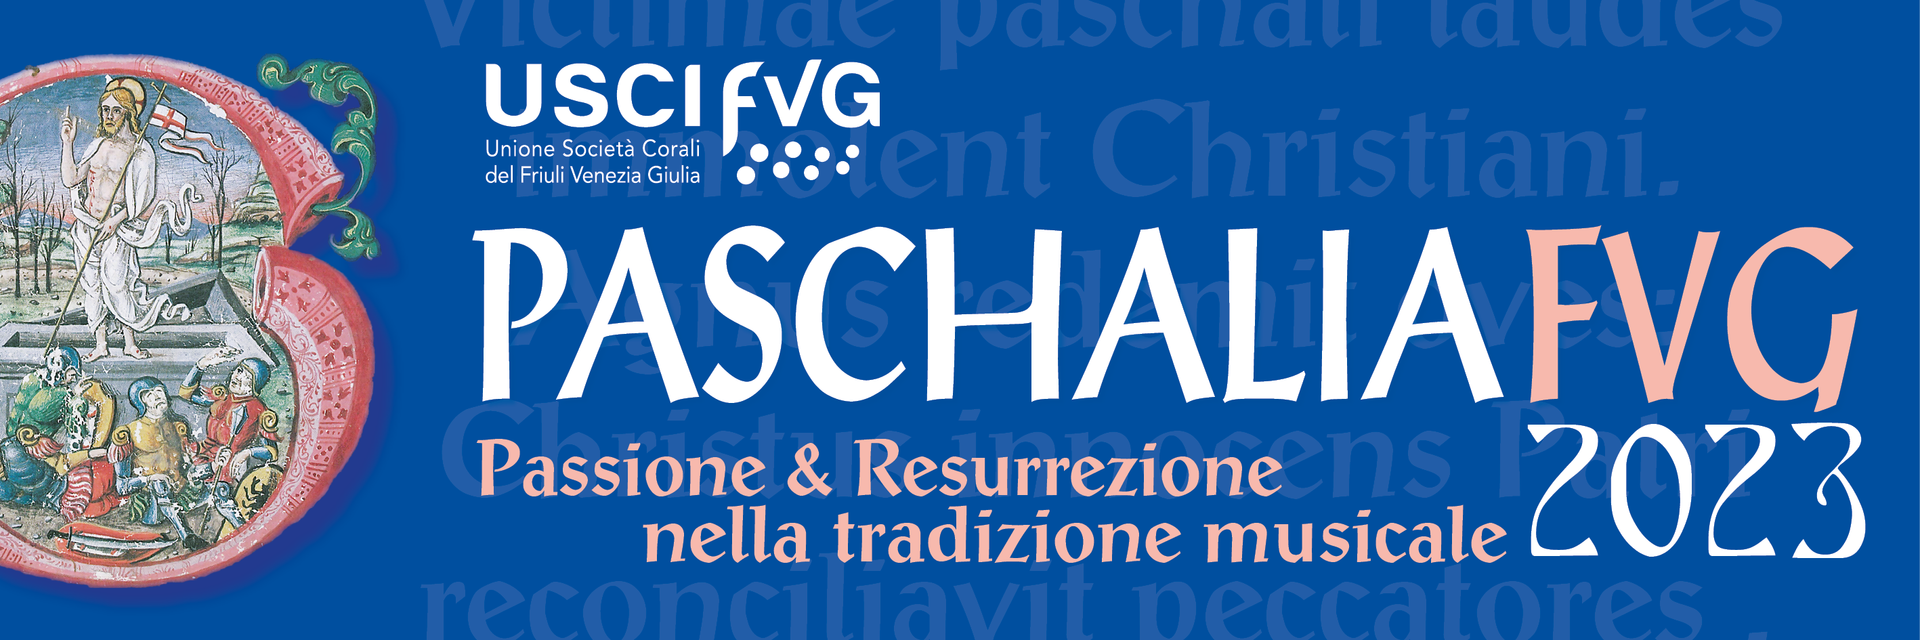 Paschalia Fvg 2023 Passione & Resurrezione nella tradizione musicale XIII edizione 4 marzo - 16 aprile 2023